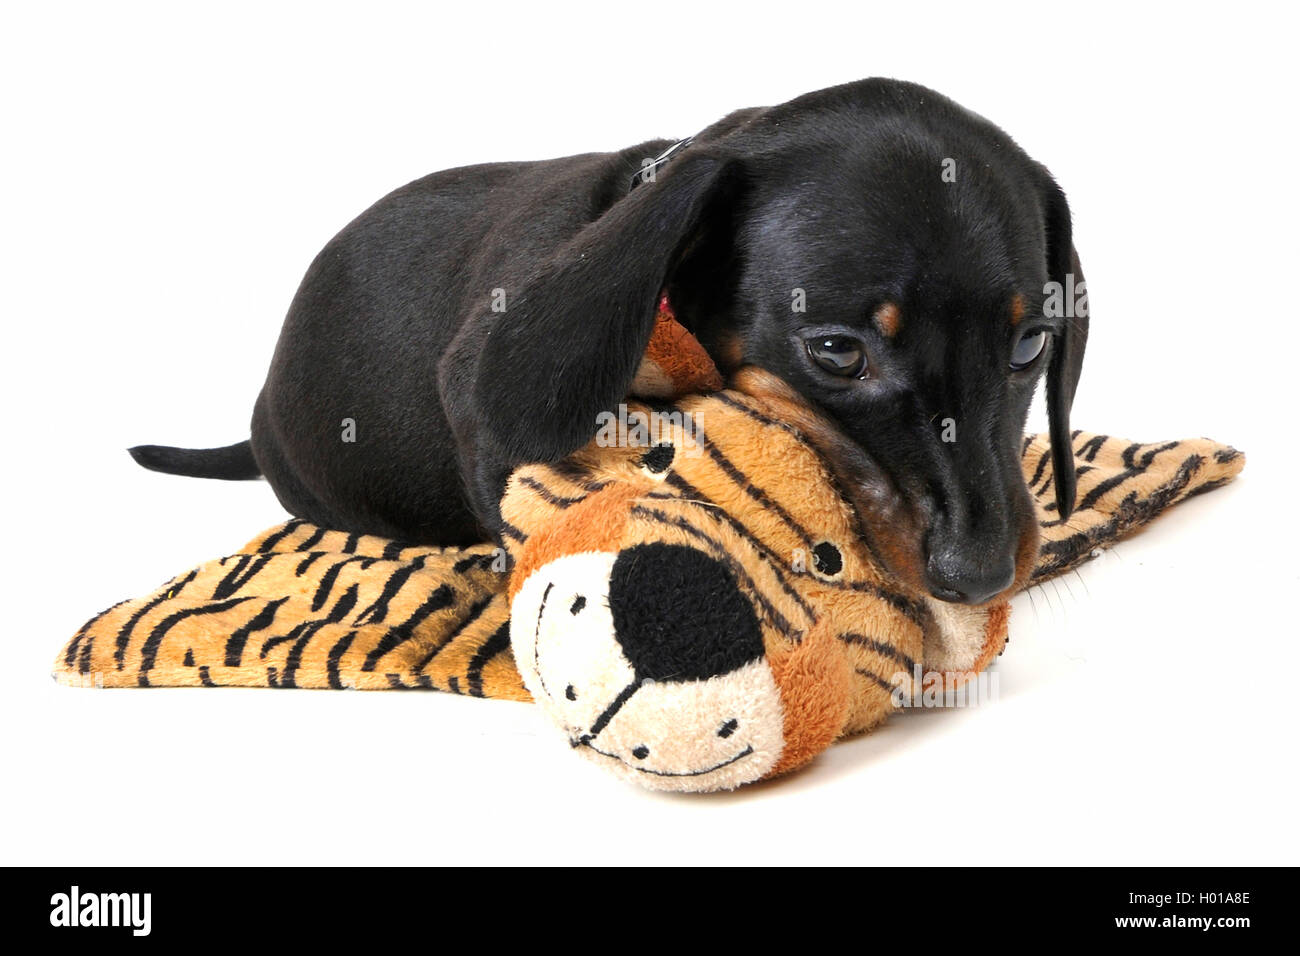 Kurzhaarige Dackel, Kurzhaarige wurst Hund, Haushund (Canis lupus f. familiaris), Welpe liegend auf einem Tiger kuschelige Decke Stockfoto